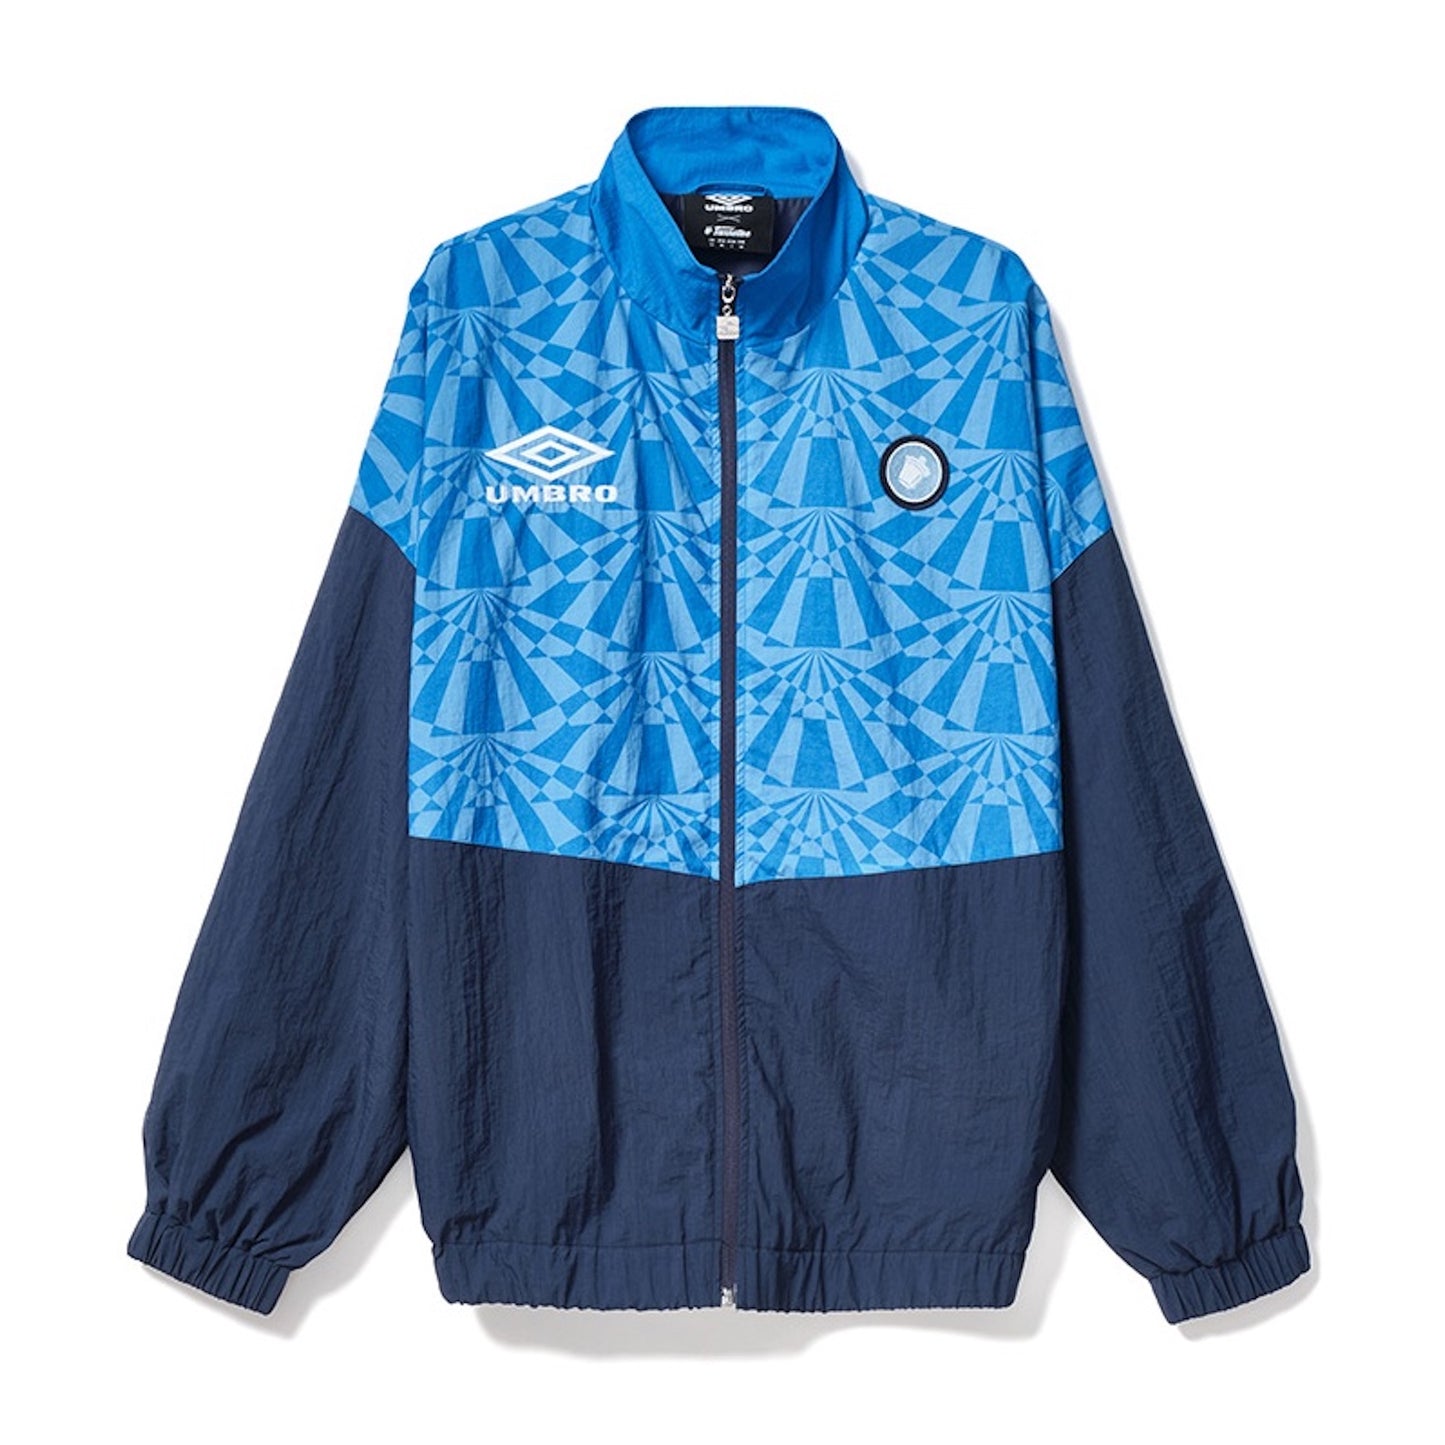 Umbro × Tacchettee Napoli Track Jacket - BLUE